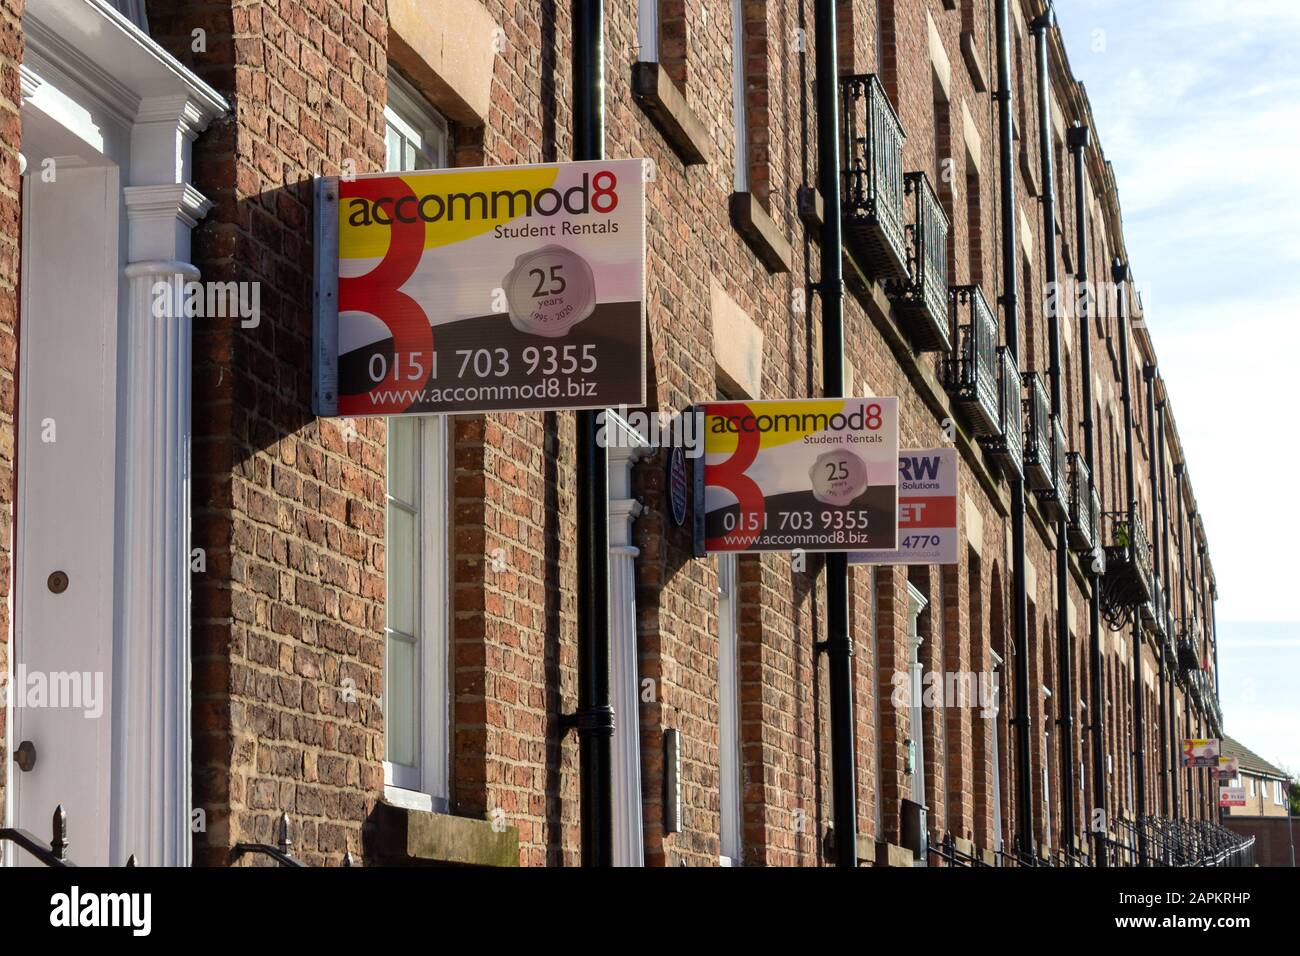 Location de biens laissant des panneaux publicitaires pour l'hébergement étudiant, rue Seymour, Liverpool Banque D'Images